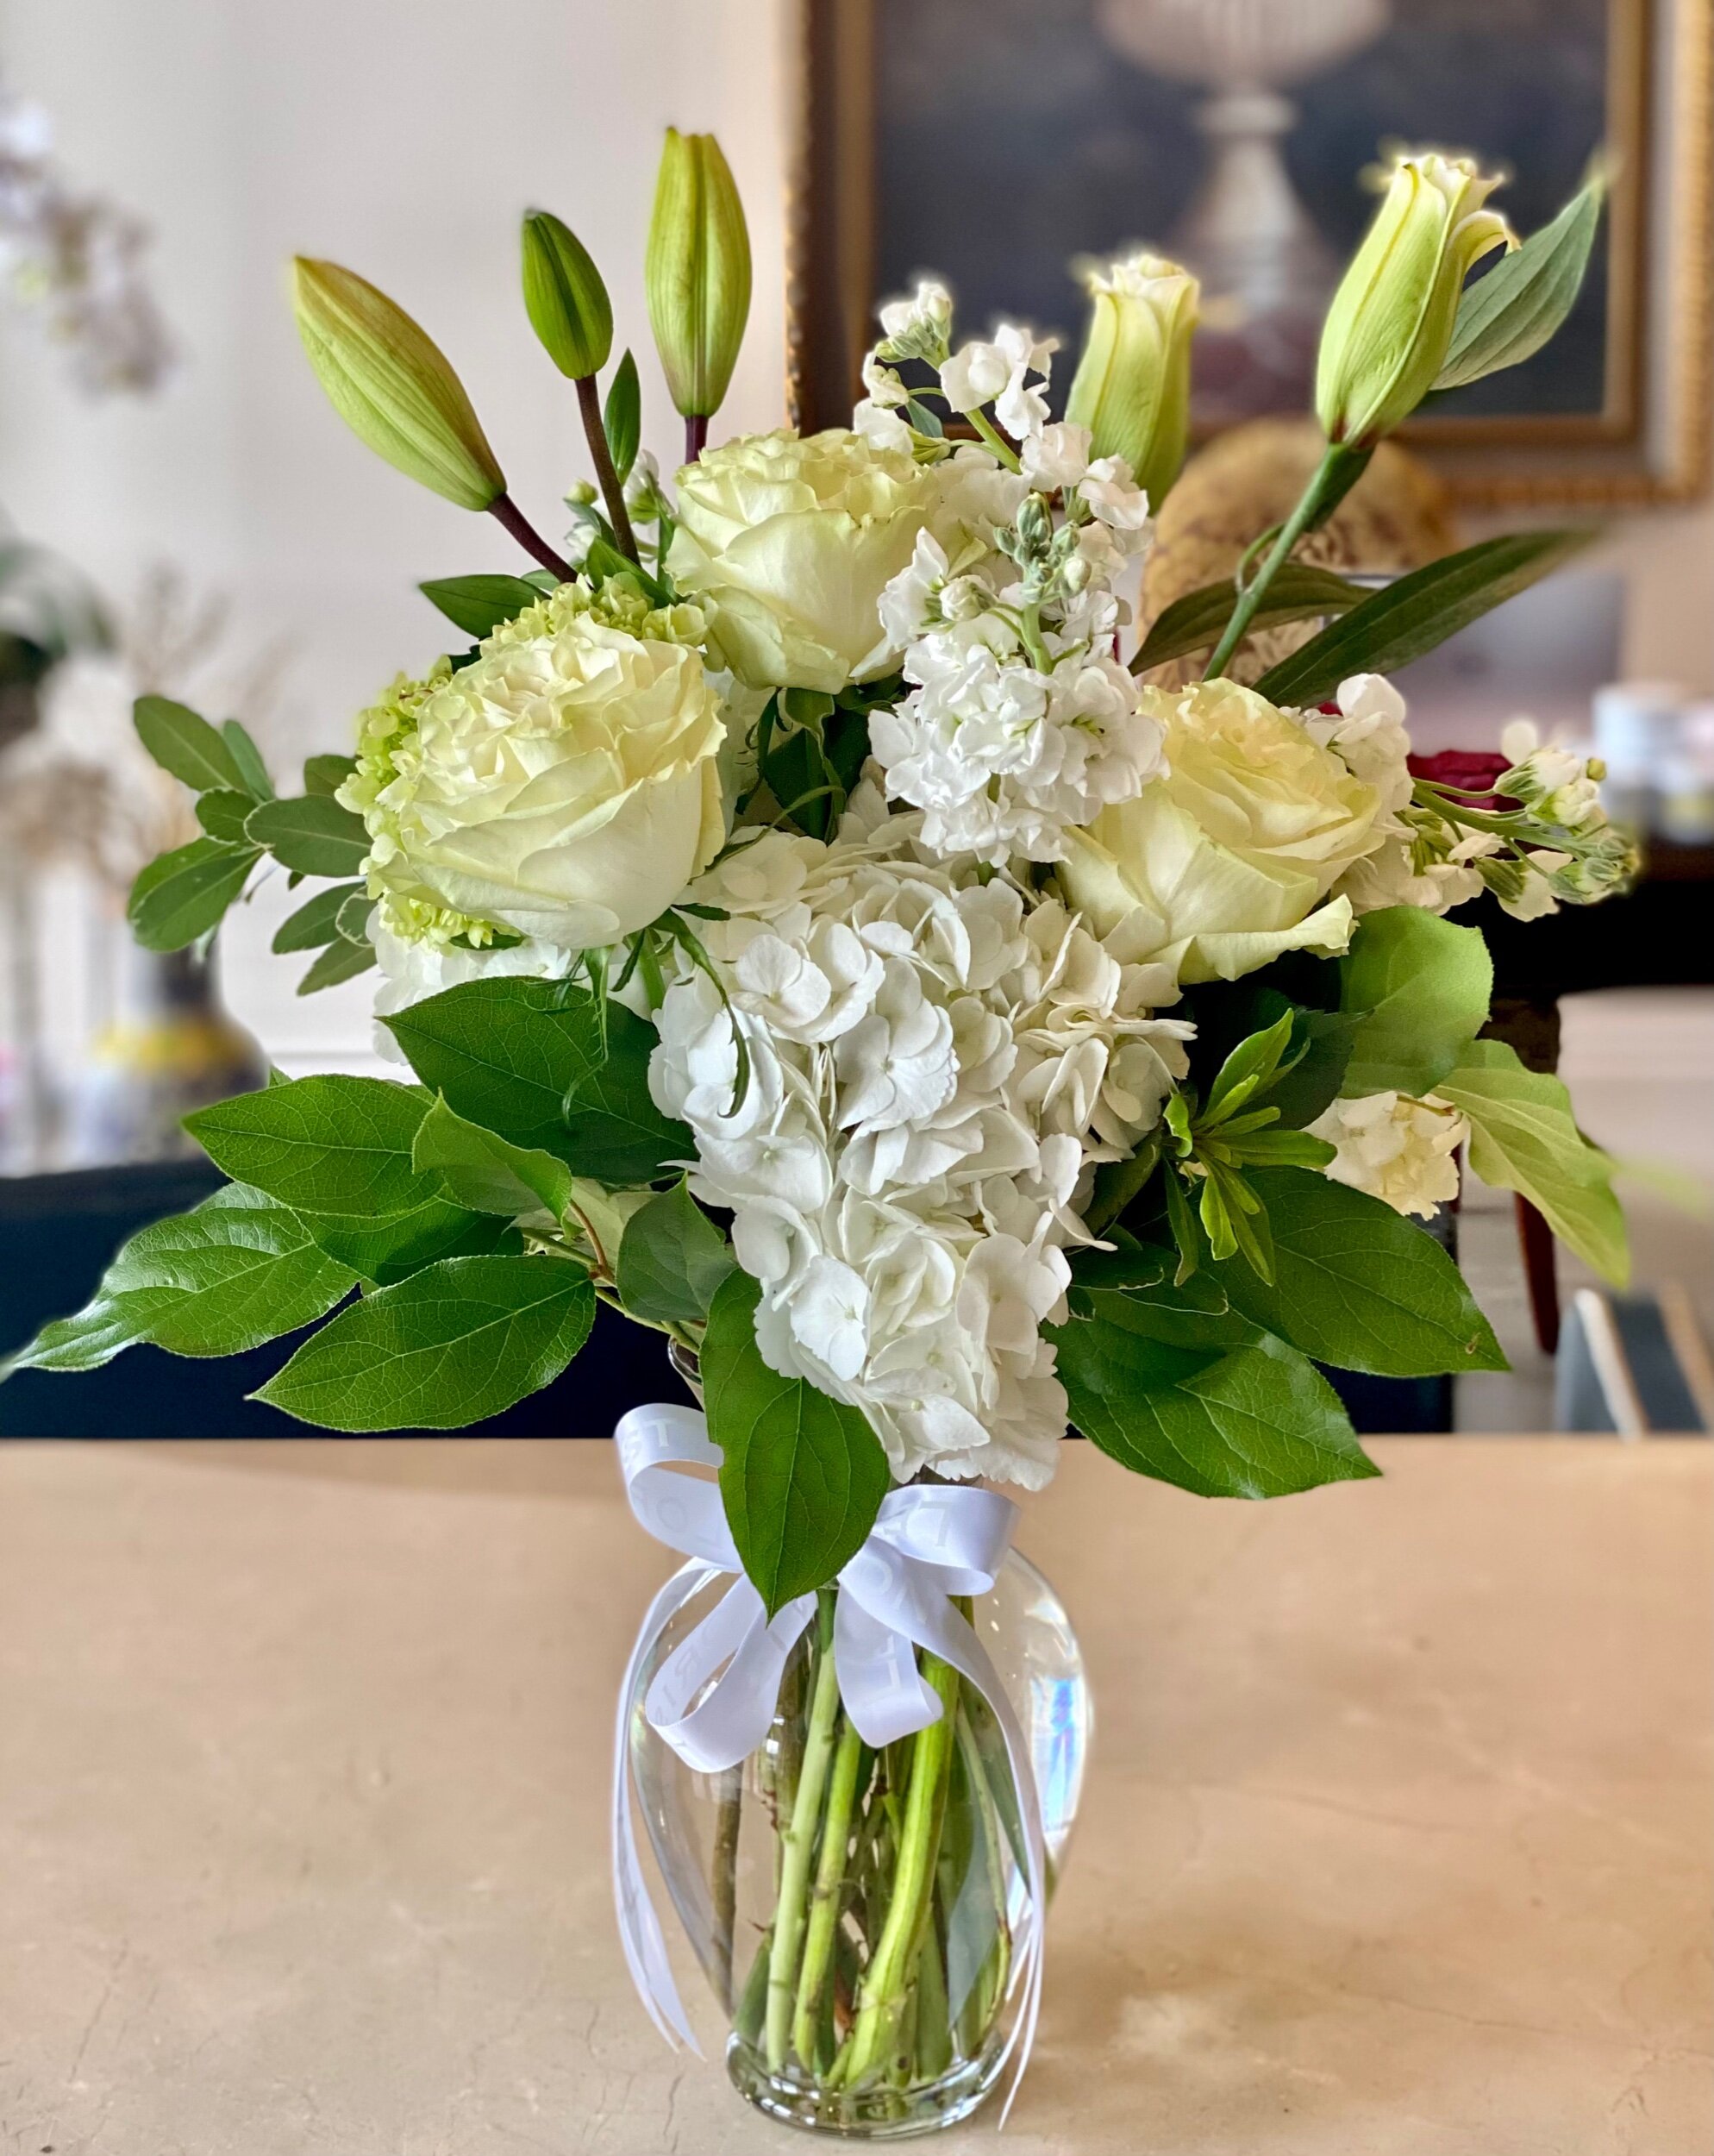 Florist Designed Sympathy Bouquet